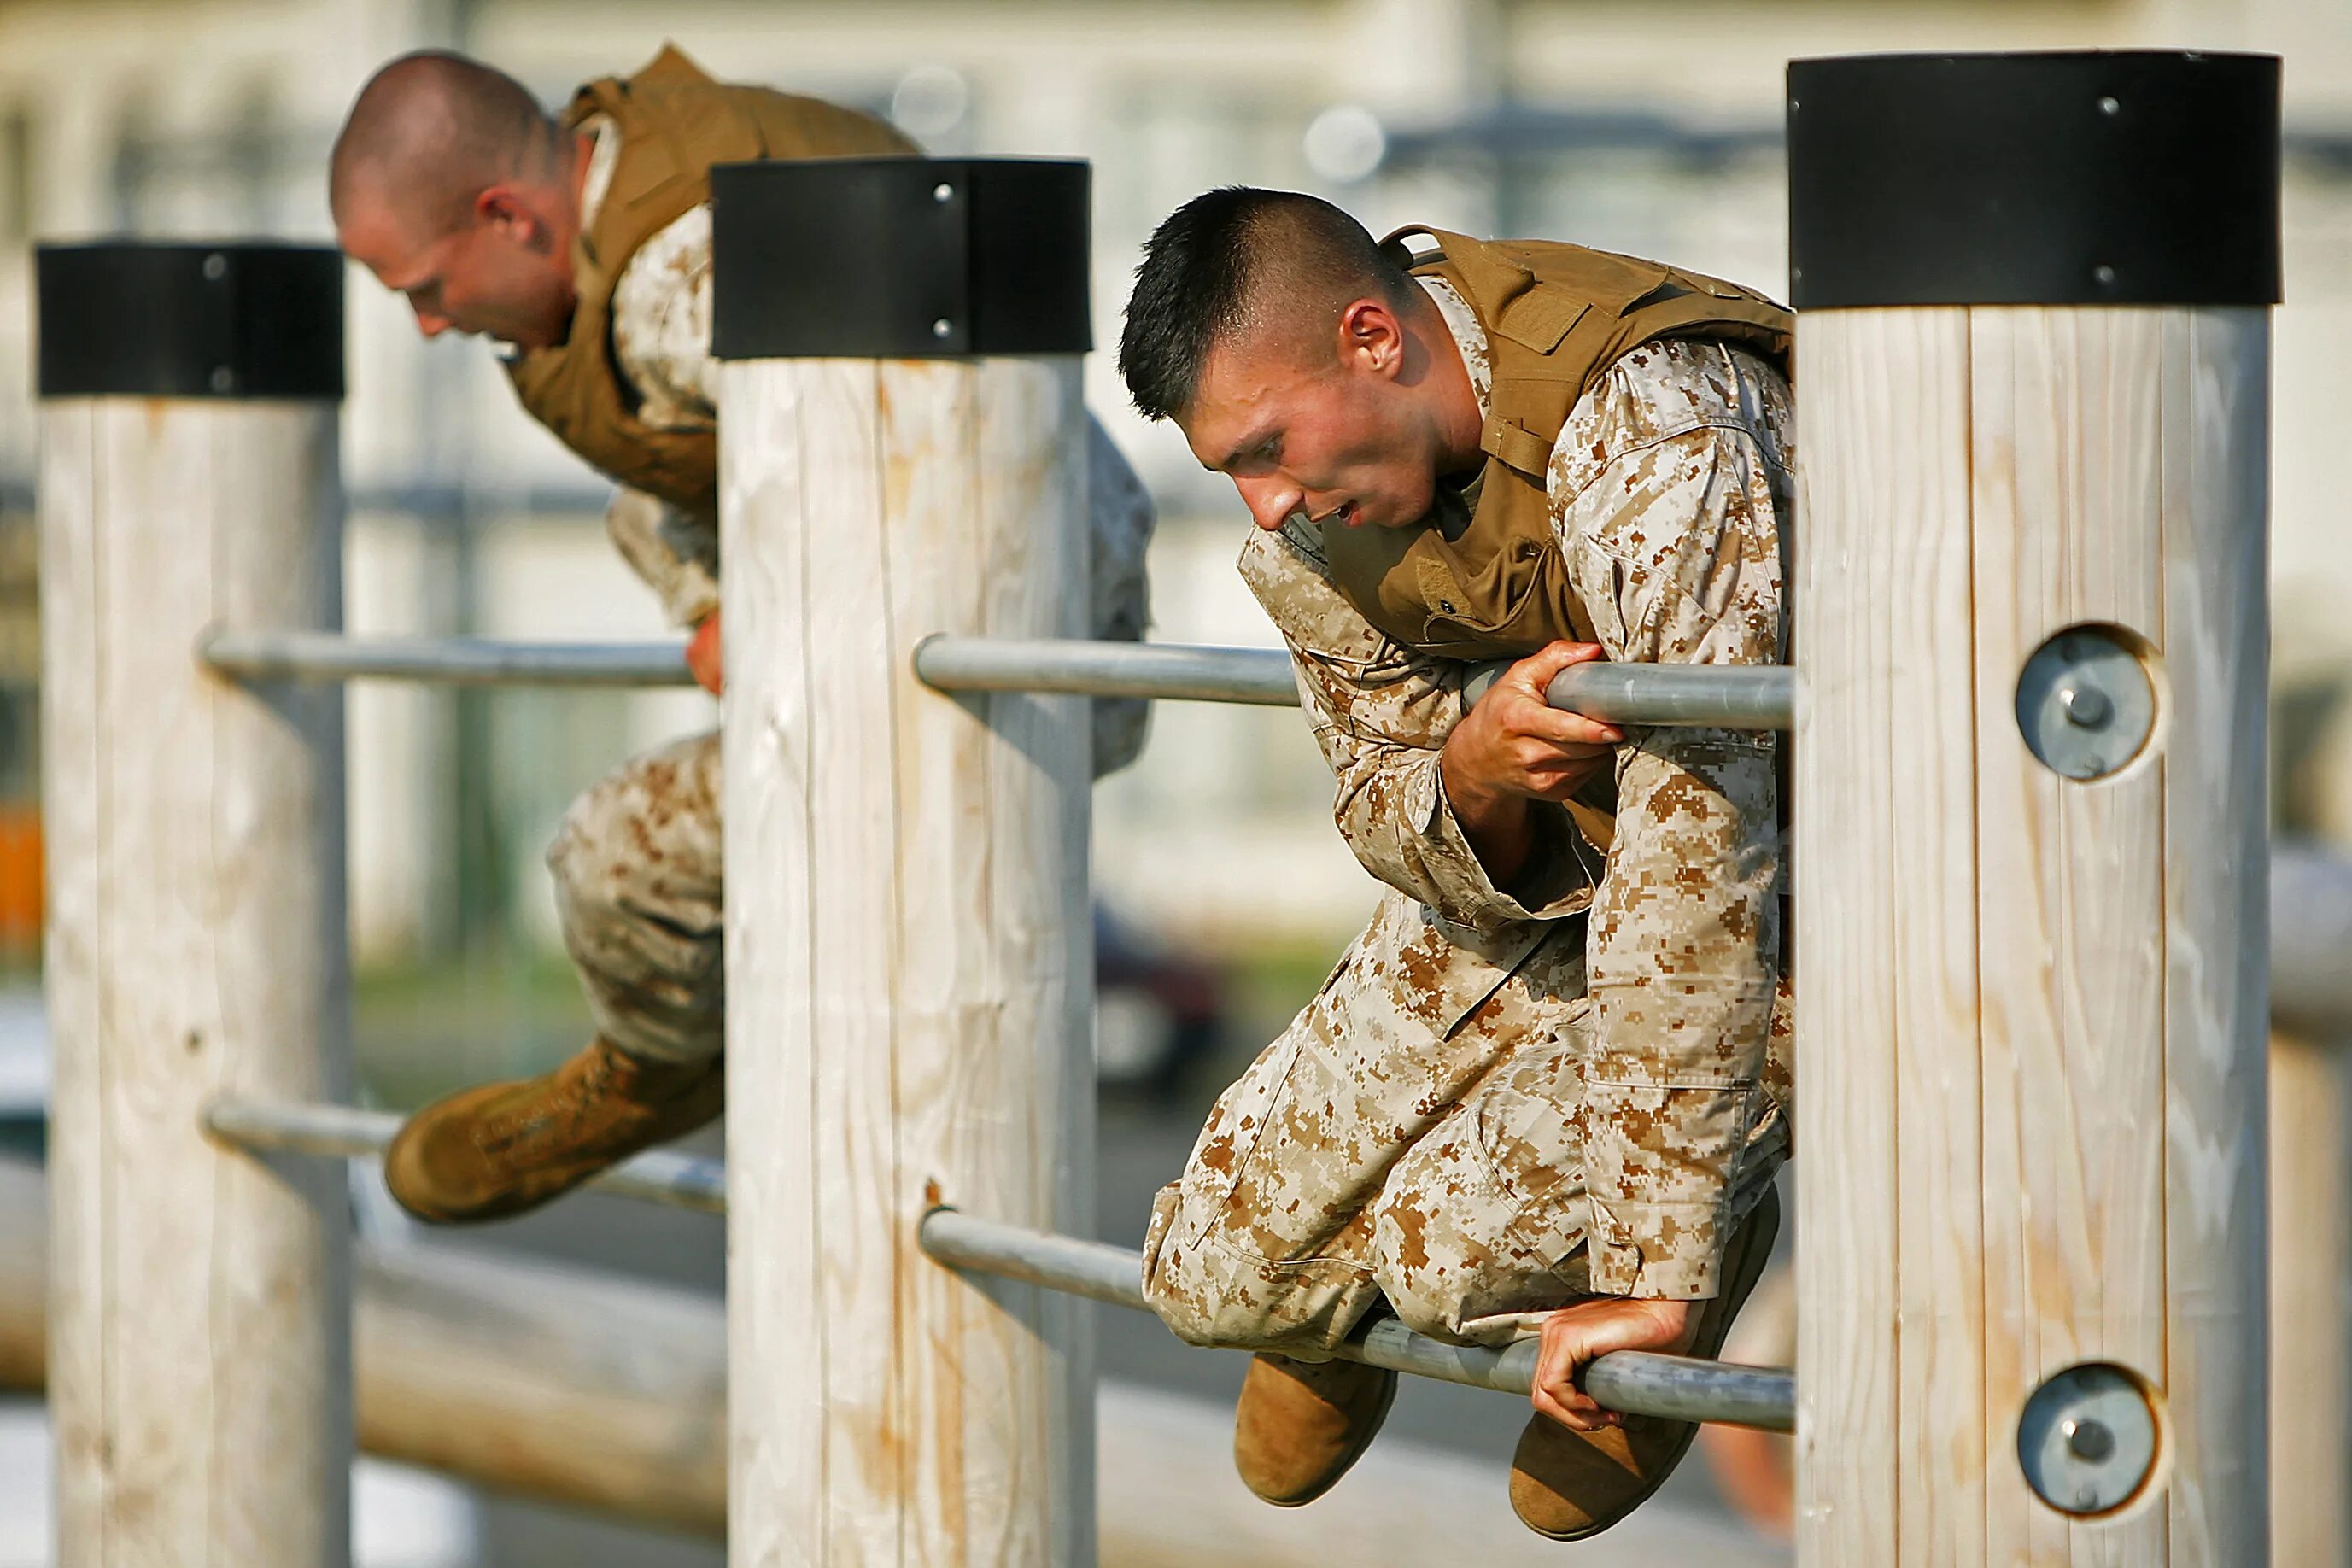 В ней армия отважна и сильна. Военные занимаются спортом. Мужественные и сильные. Мужчина в военной форме занимается спортом. Как тренируют военное дело.